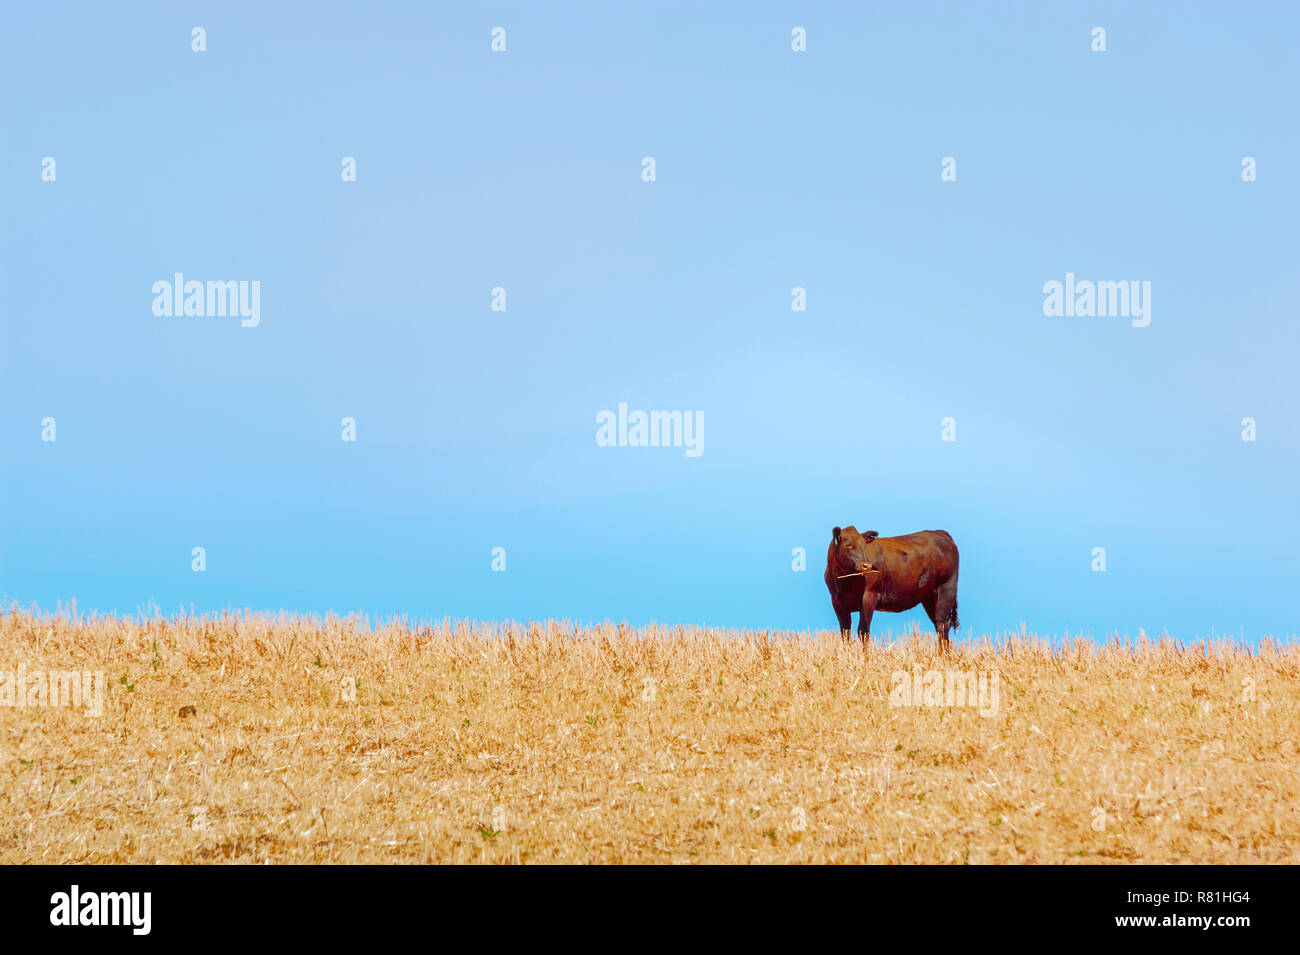 Eine einsame Kuh steht auf einem Hügel im Korn stoppeln Feld unter blauem Himmel in ländlichen Oregon Stockfoto